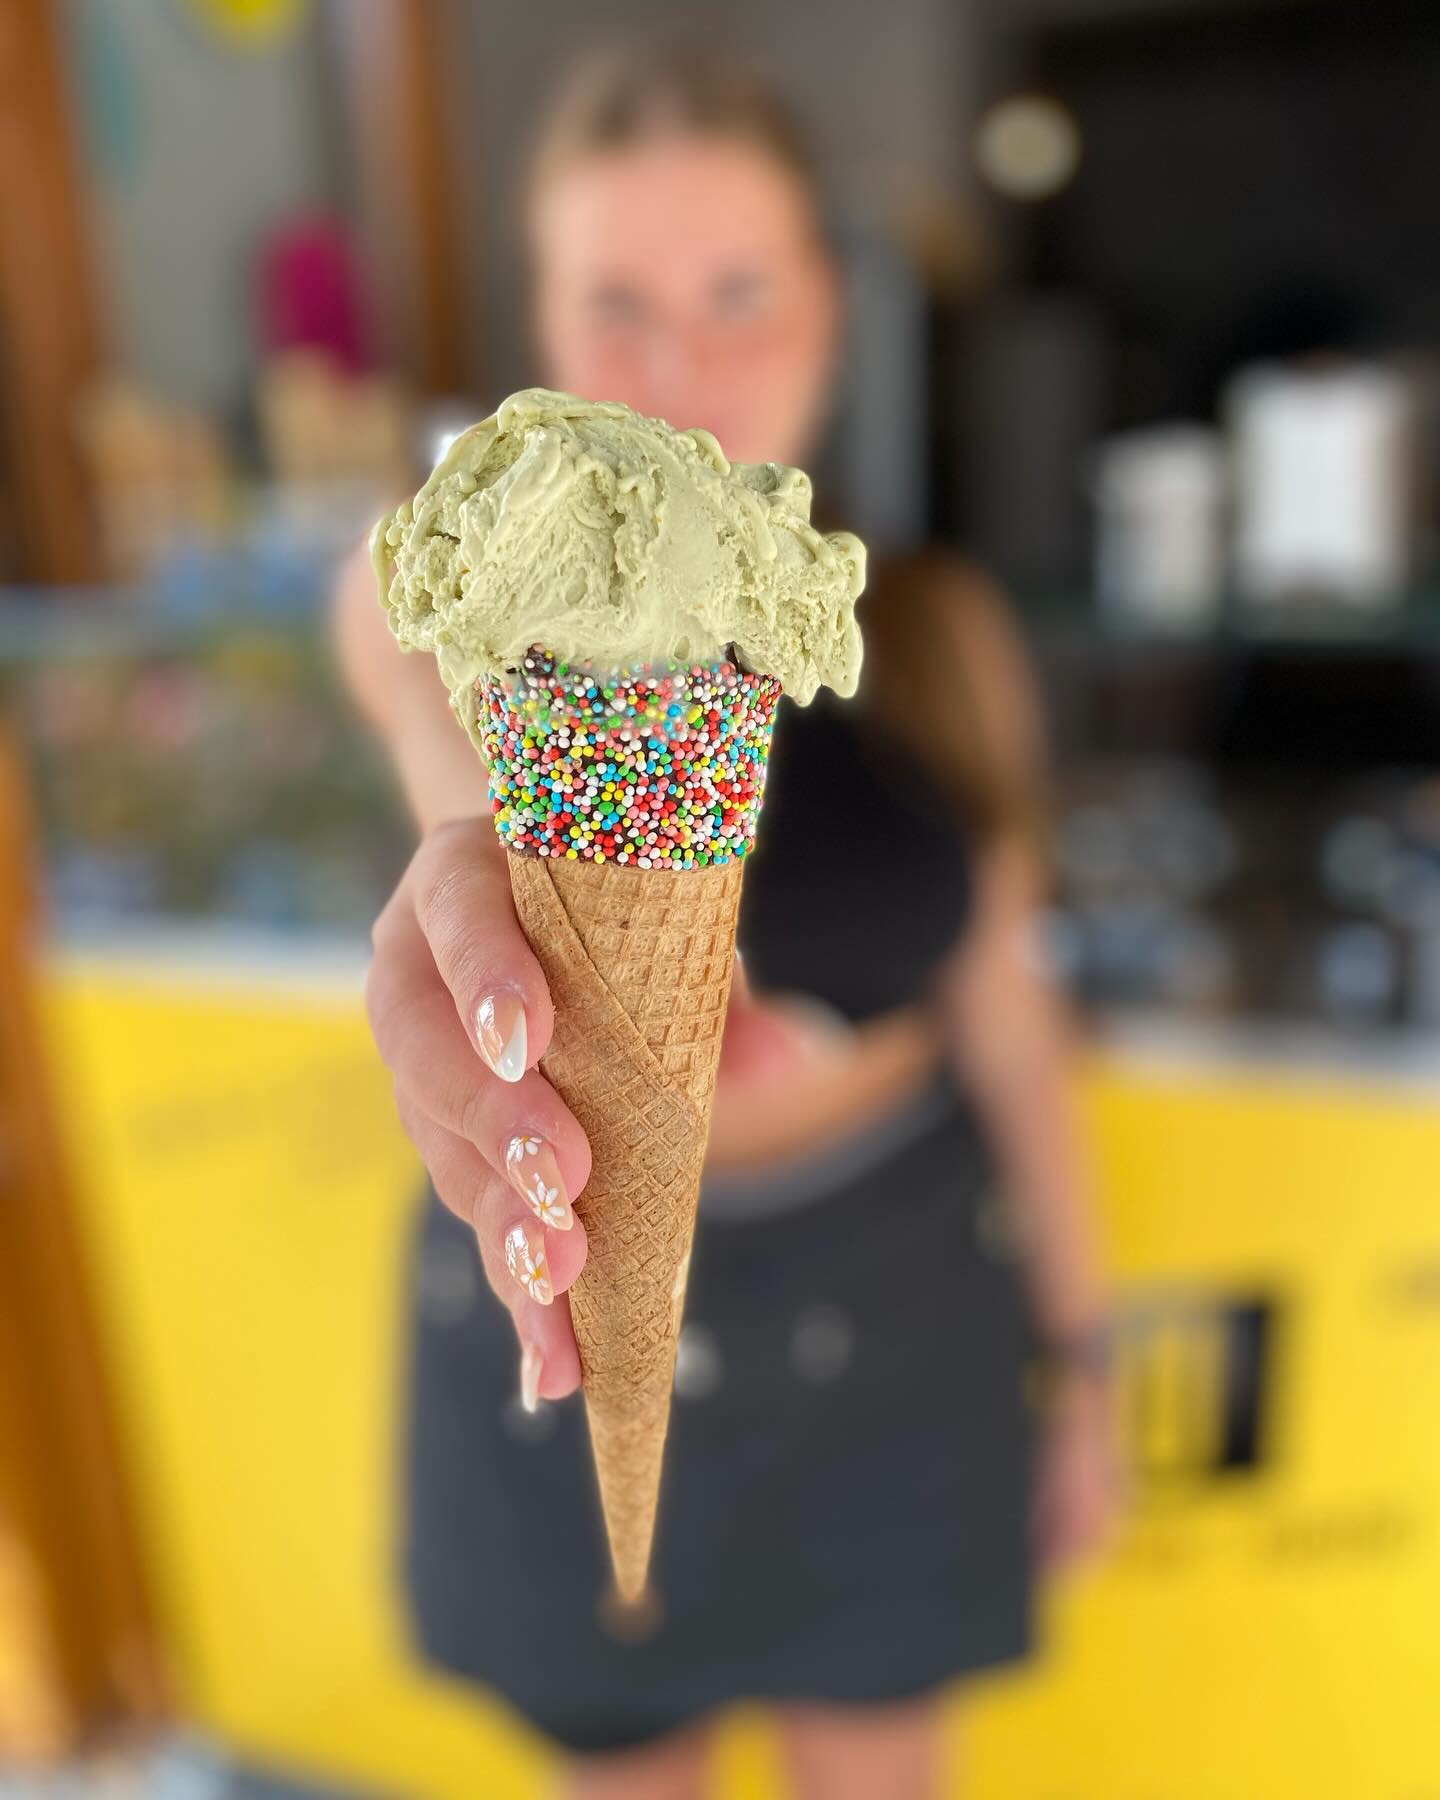 V těchto horkých dnech je ideální volbou naše zmrzlina, tak se zastavte????
Nyní ve vitríně všemi oblíbená pistáciová !❤️

#gellato #icecream #summer #summervibes #leto #mrzlina #skodanezajitnazmrzlinu
#kavarna #tritecky #skodanezajit